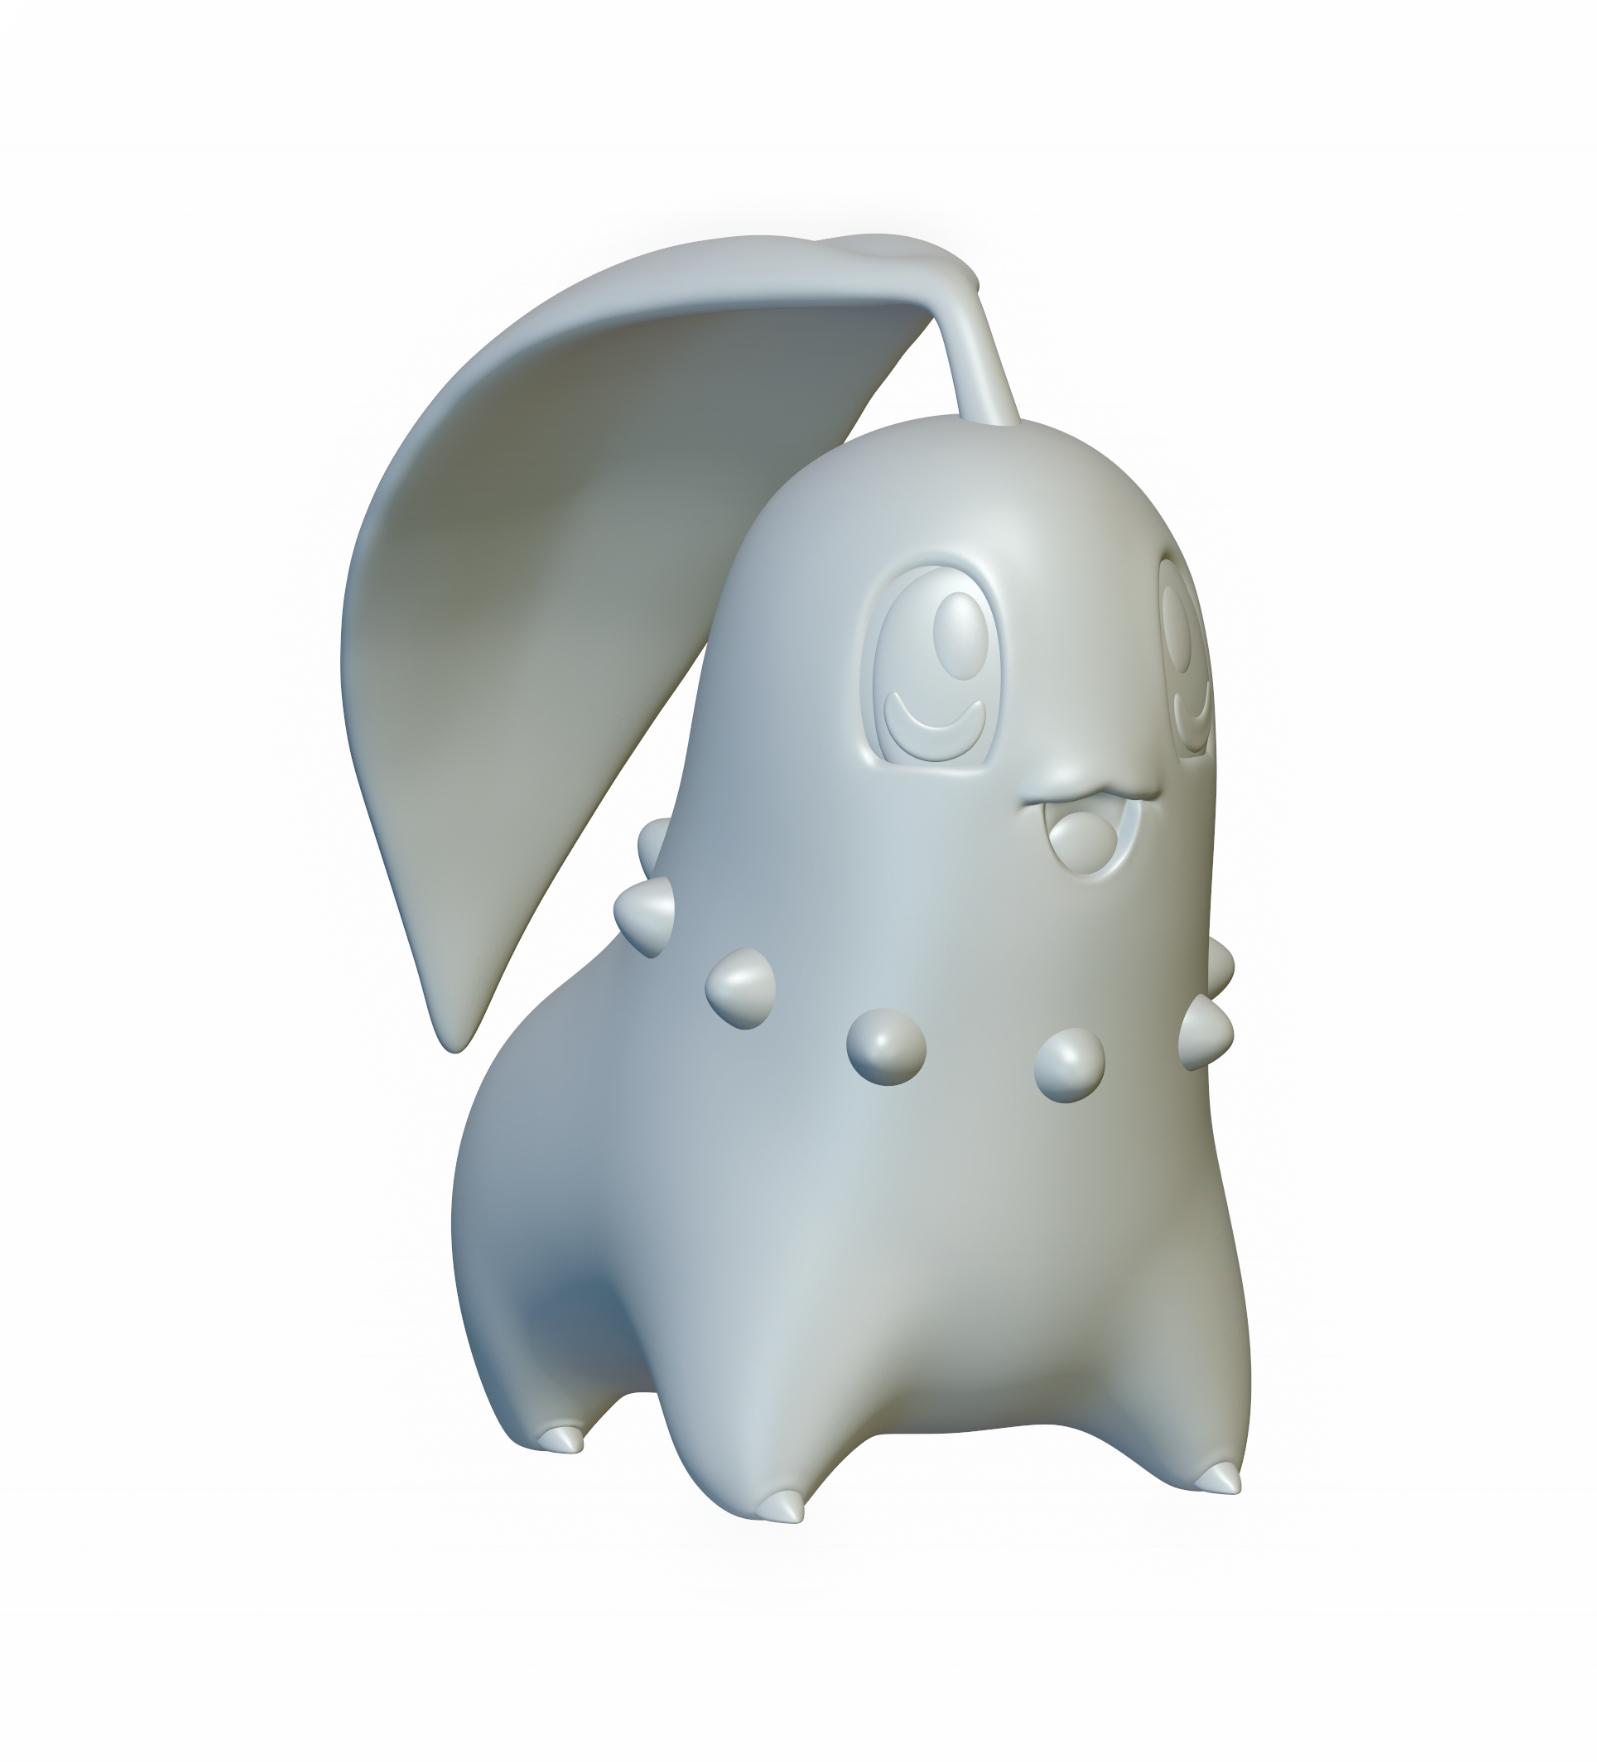 Pokemon Chikorita #152 - Optimized for 3D Printing 3d model